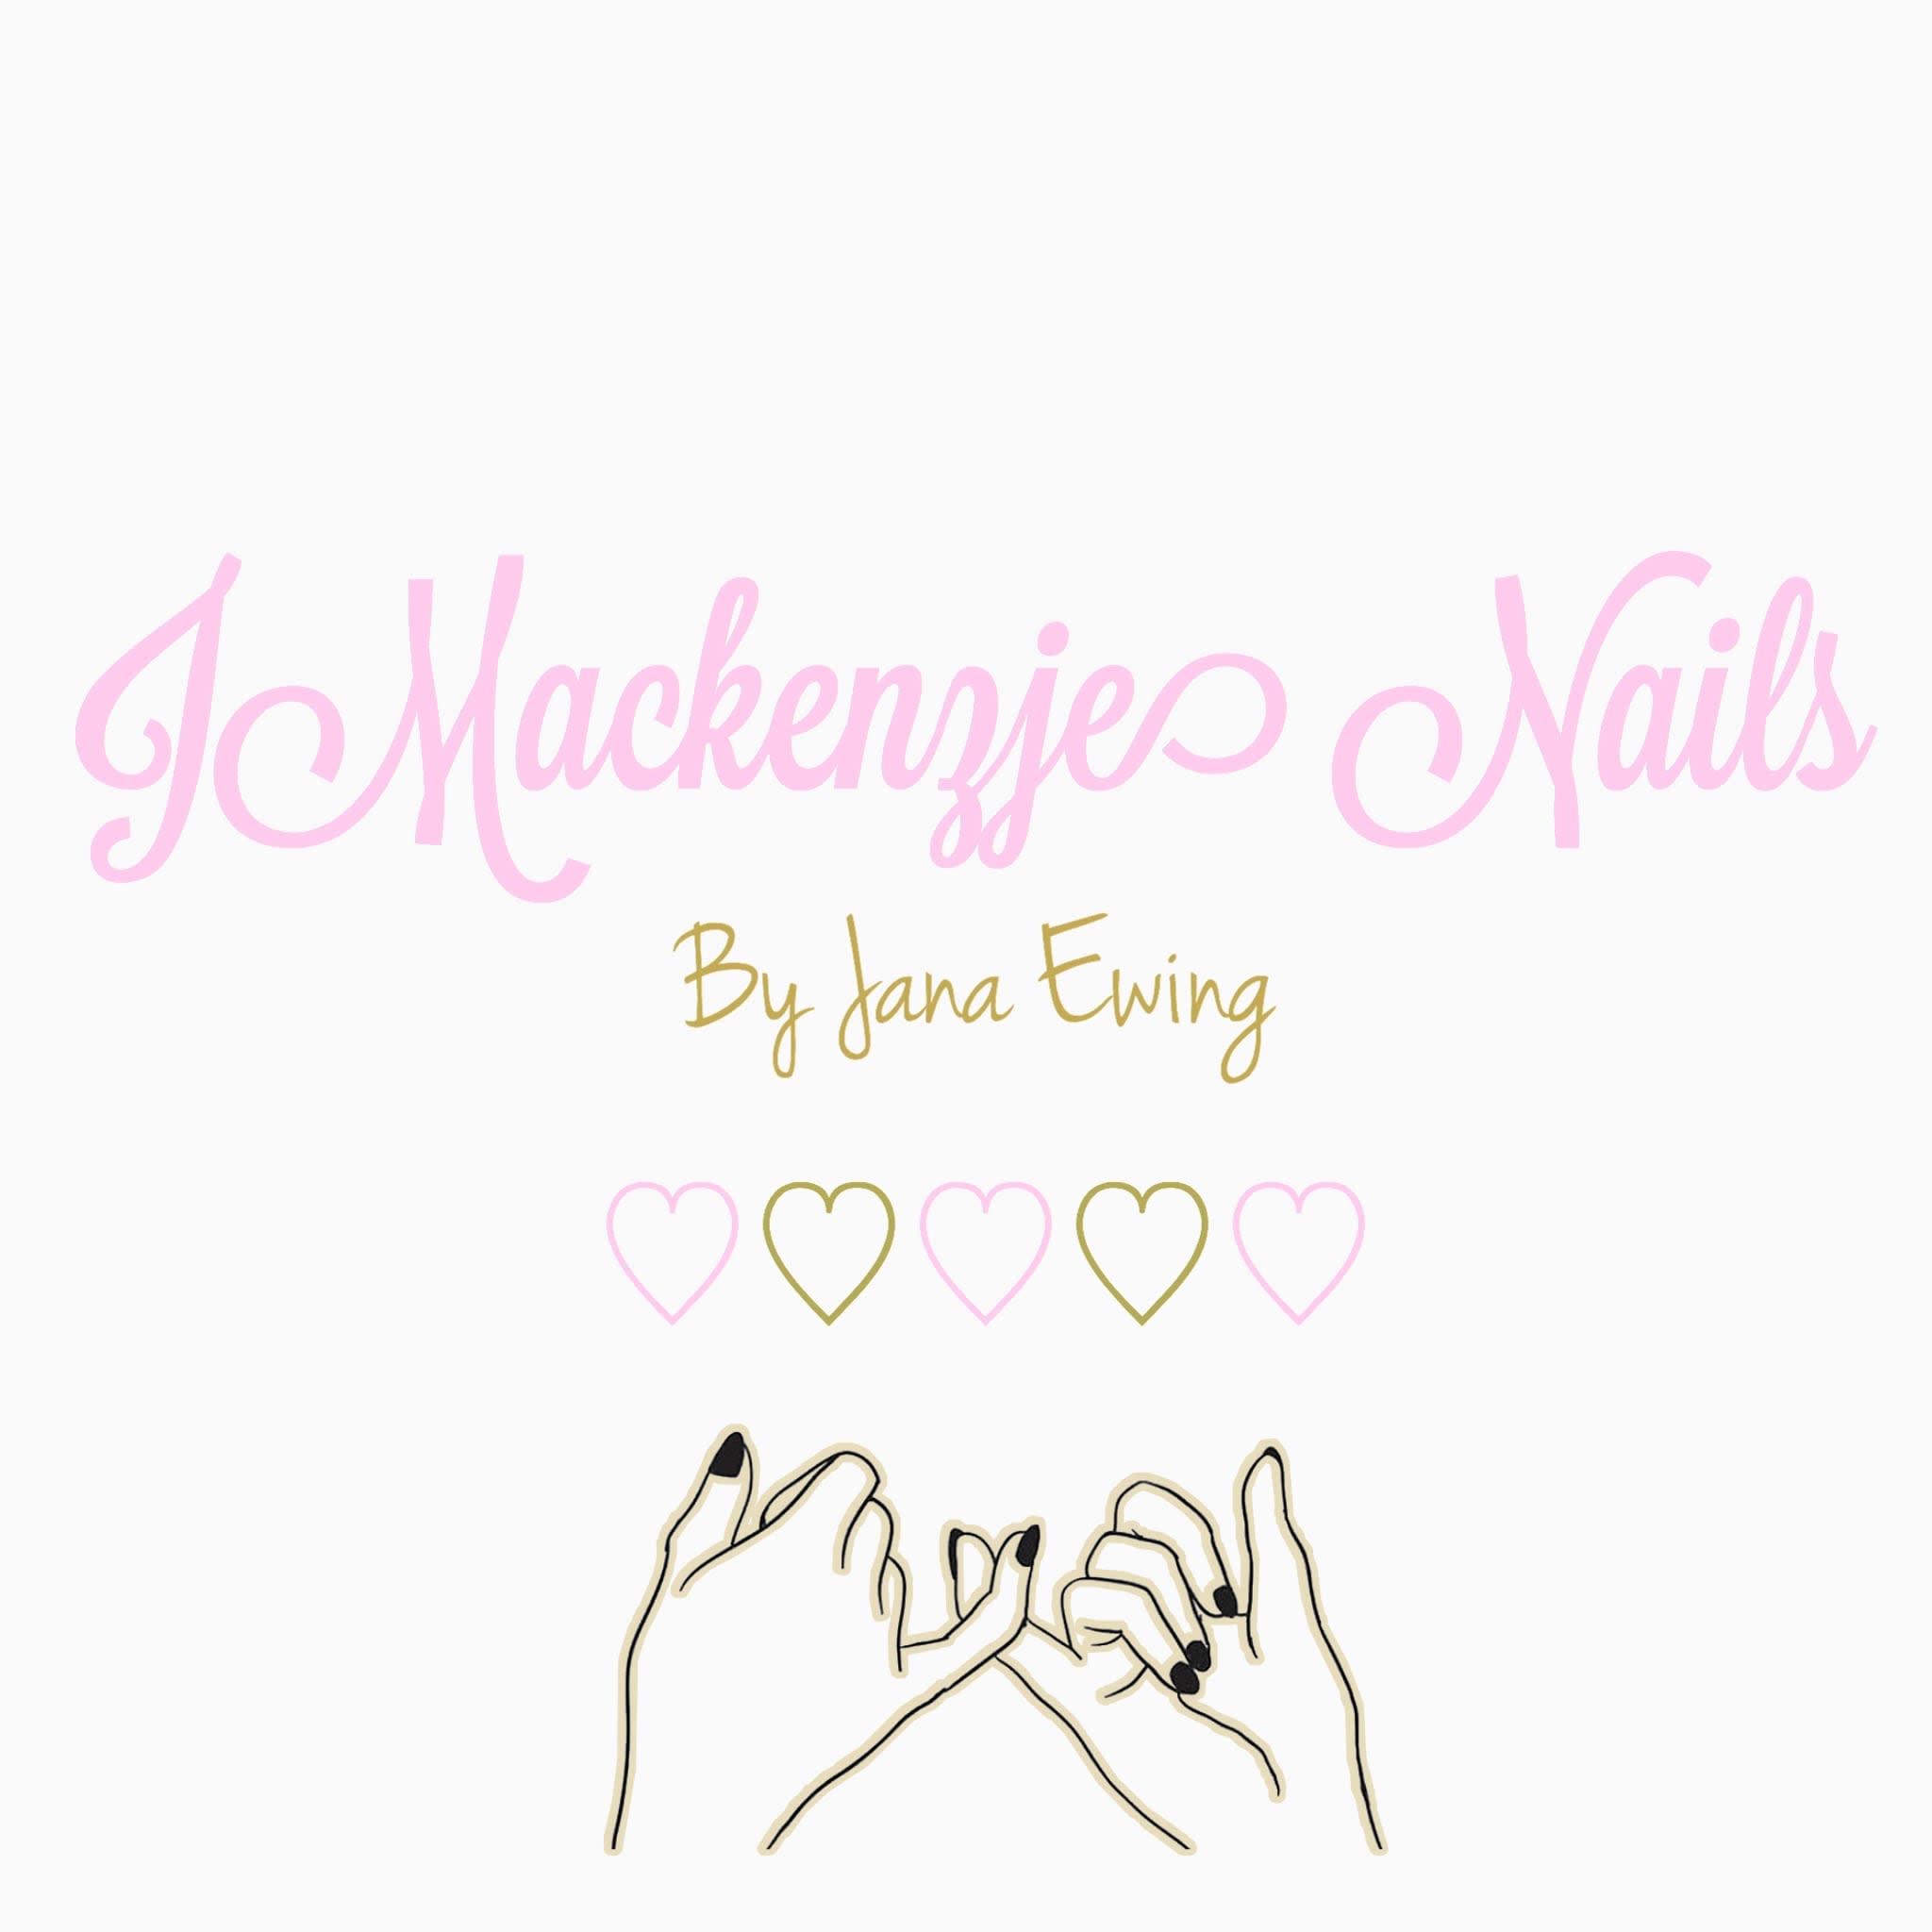 J MacKenzie Nails